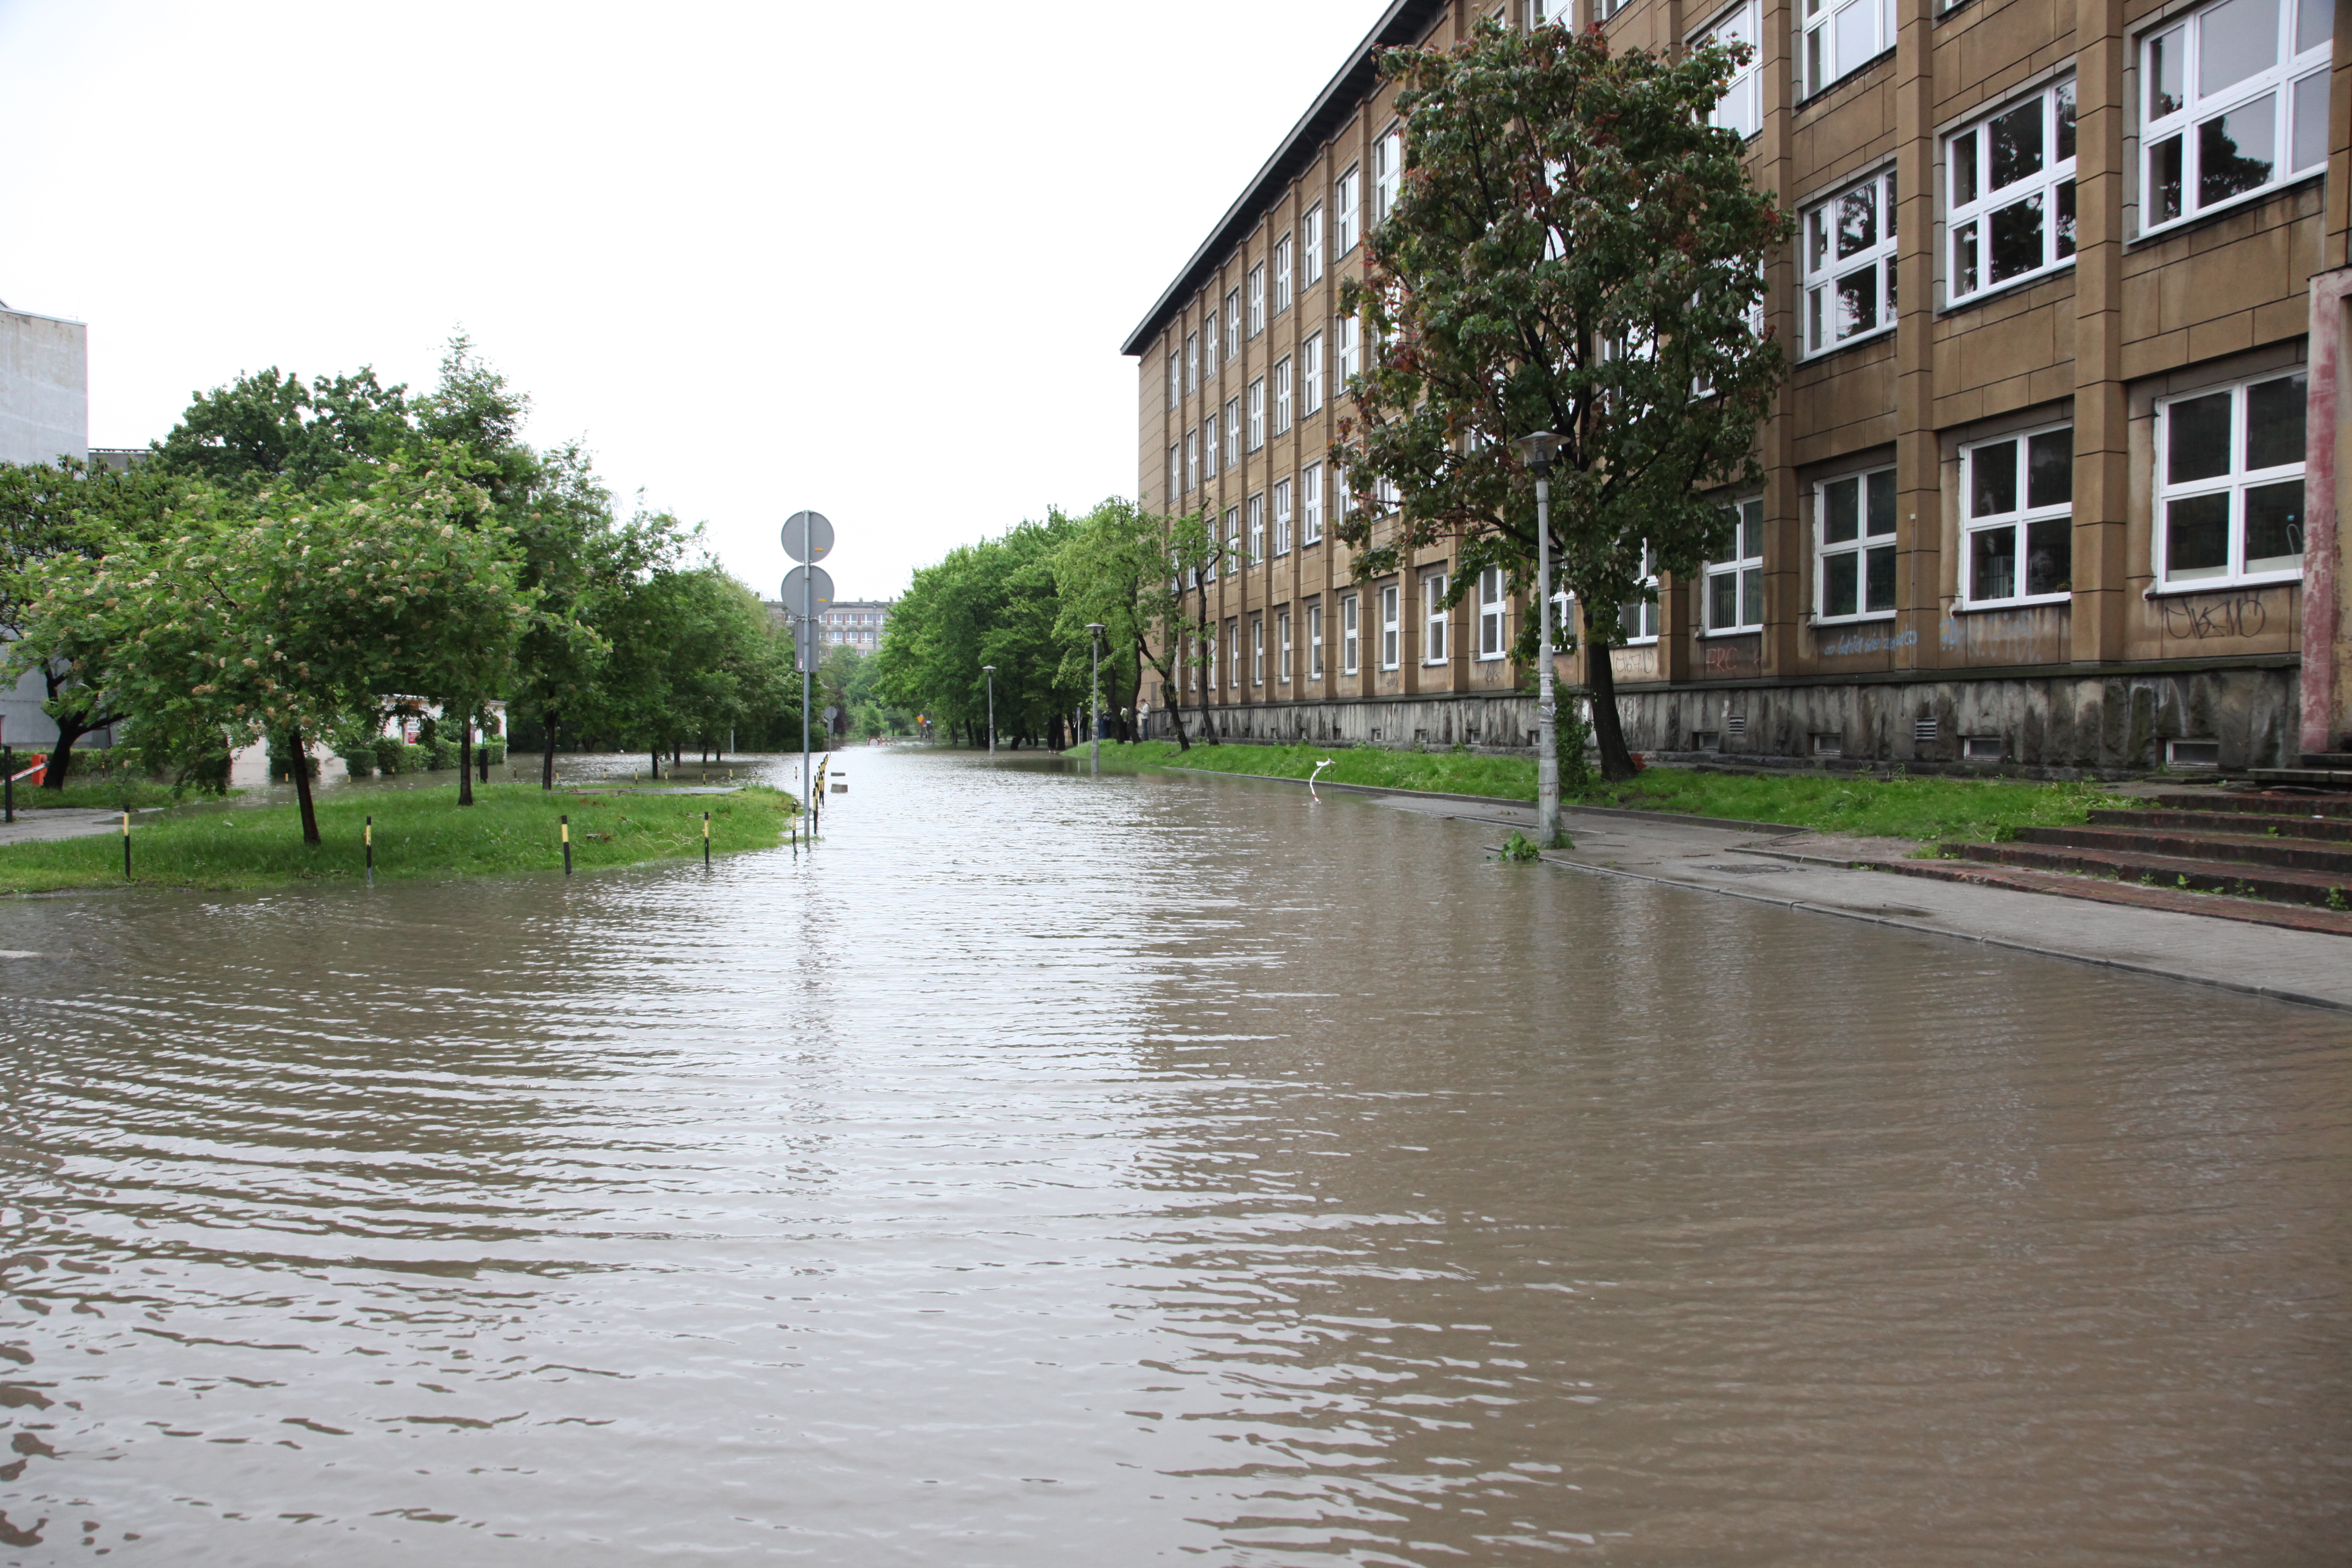 Poprawa stanu bezpieczeństwa przeciwpowodziowego dla Miasta Gliwice poprzez modernizację i rozbudowę systemu gospodarowania wodami opadowymi – etap II 